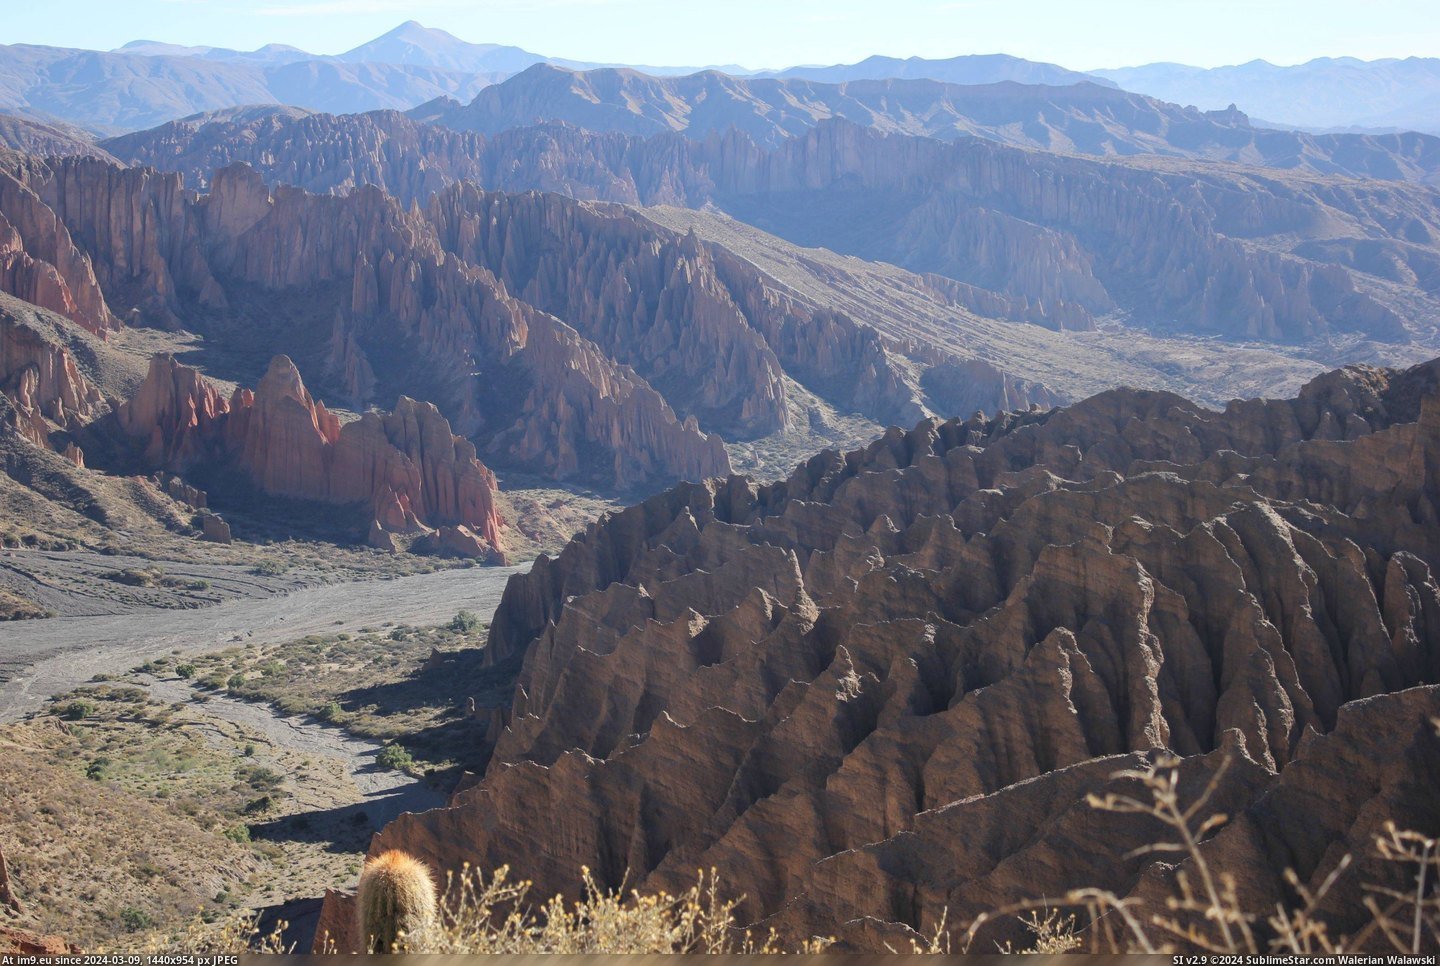 #Canyon #Bolivia #Tupiza #3110x2073 [Earthporn] Canyon near Tupiza, Bolivia [3110x2073] [OC] Pic. (Bild von album My r/EARTHPORN favs))